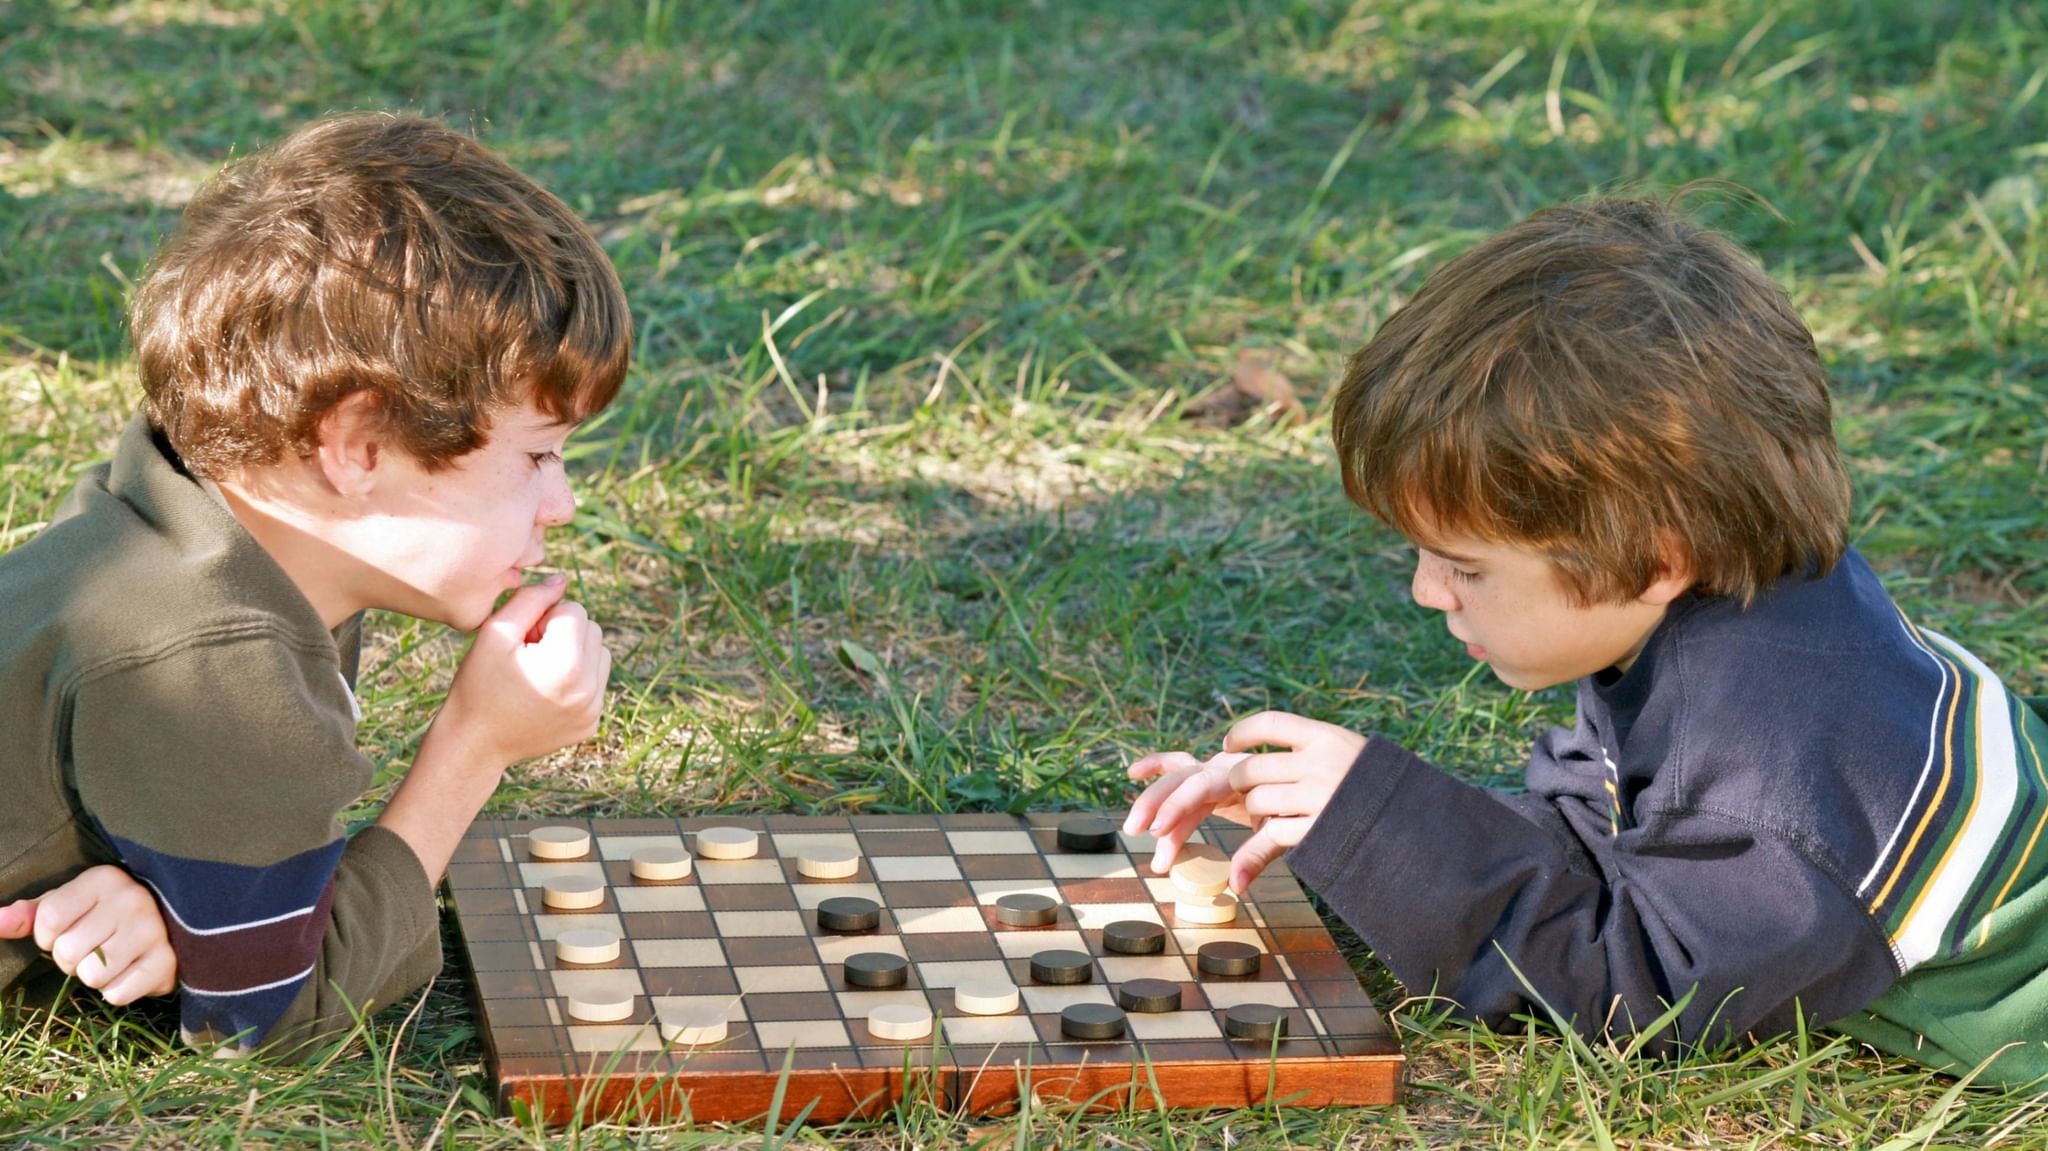 Ребята играли в шашки. Дети играющие в шашки. Шашки для детей. Дети играют в настольные игры.